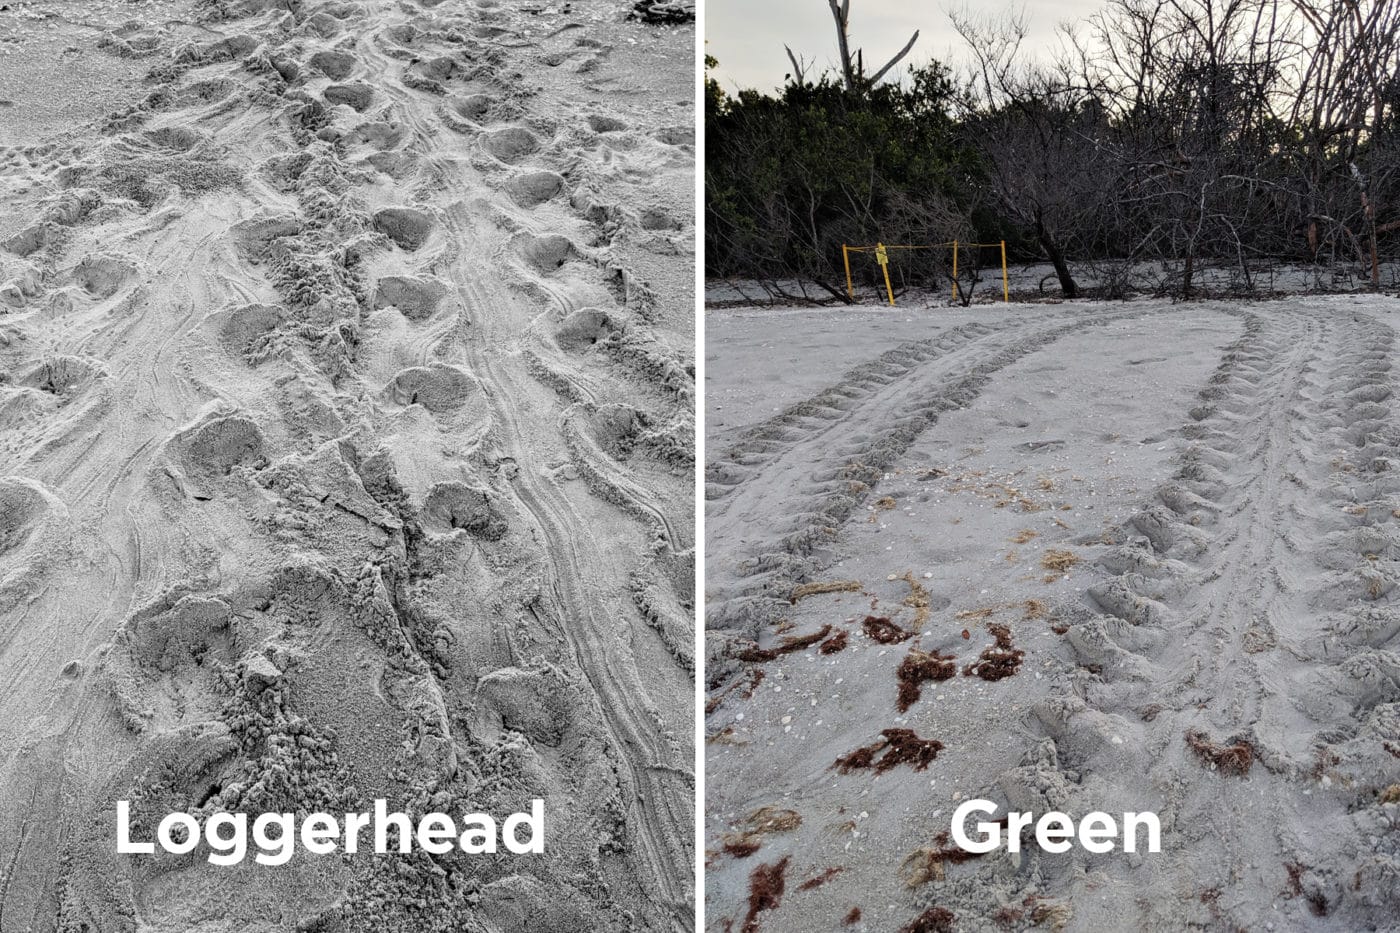 Loggerhead versus green sea turtle tracks